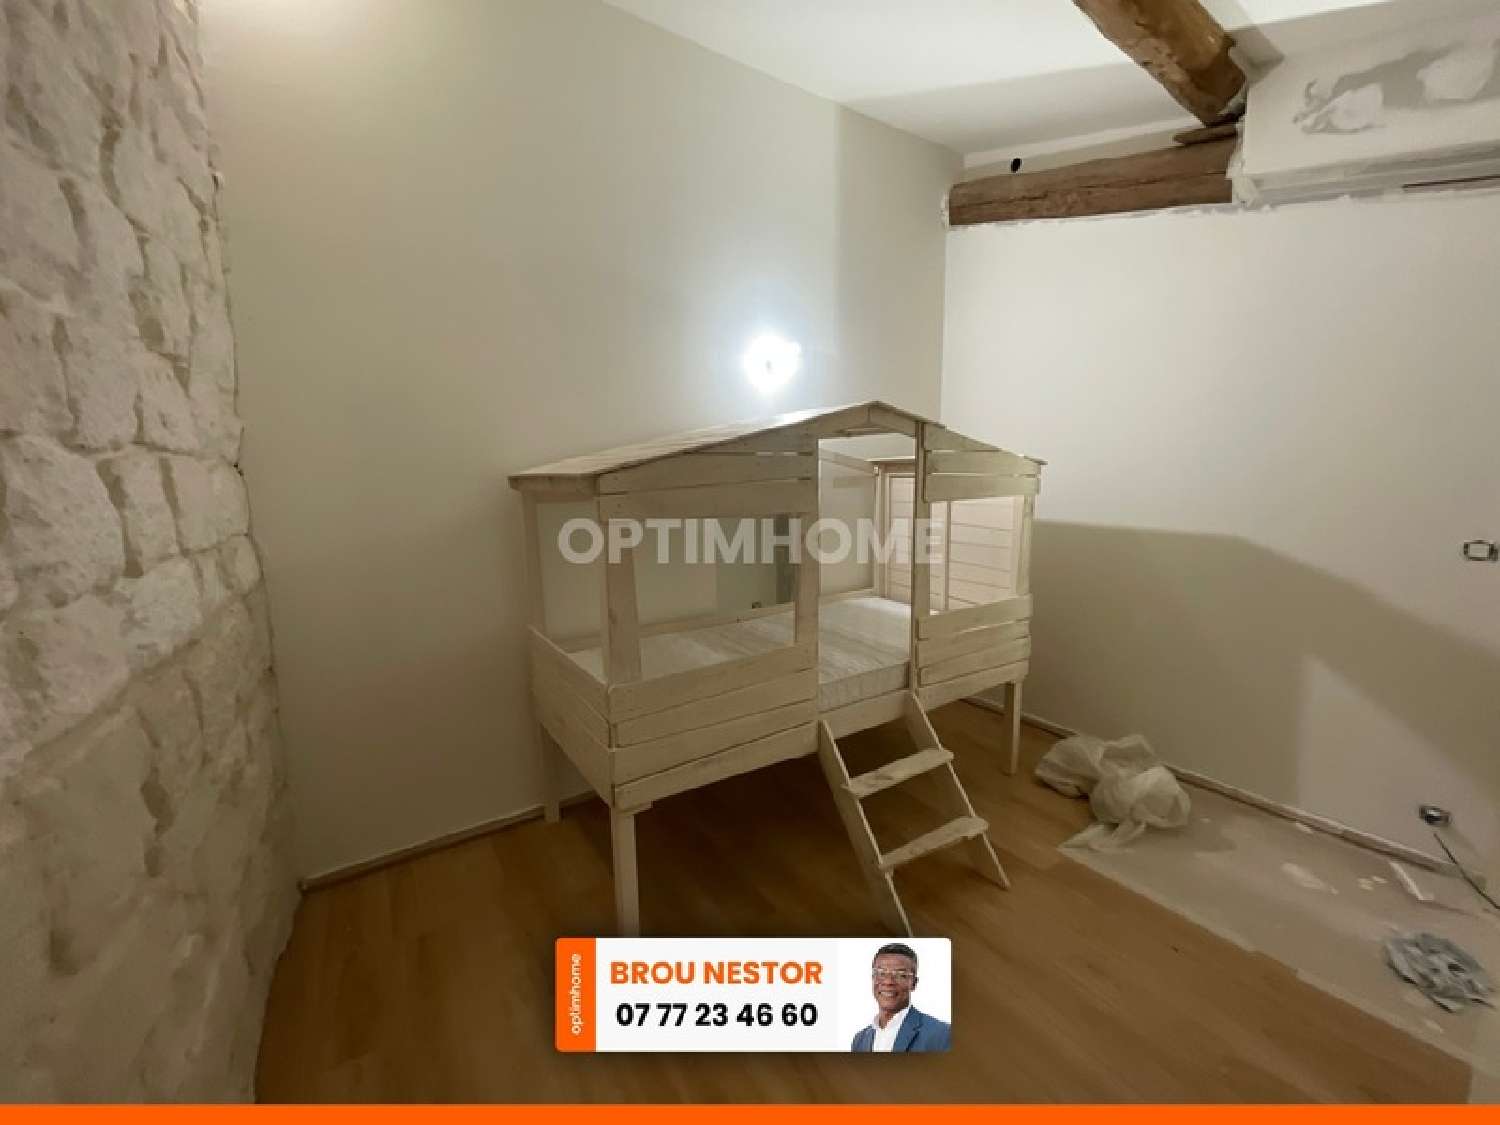  à vendre appartement Agde Hérault 3